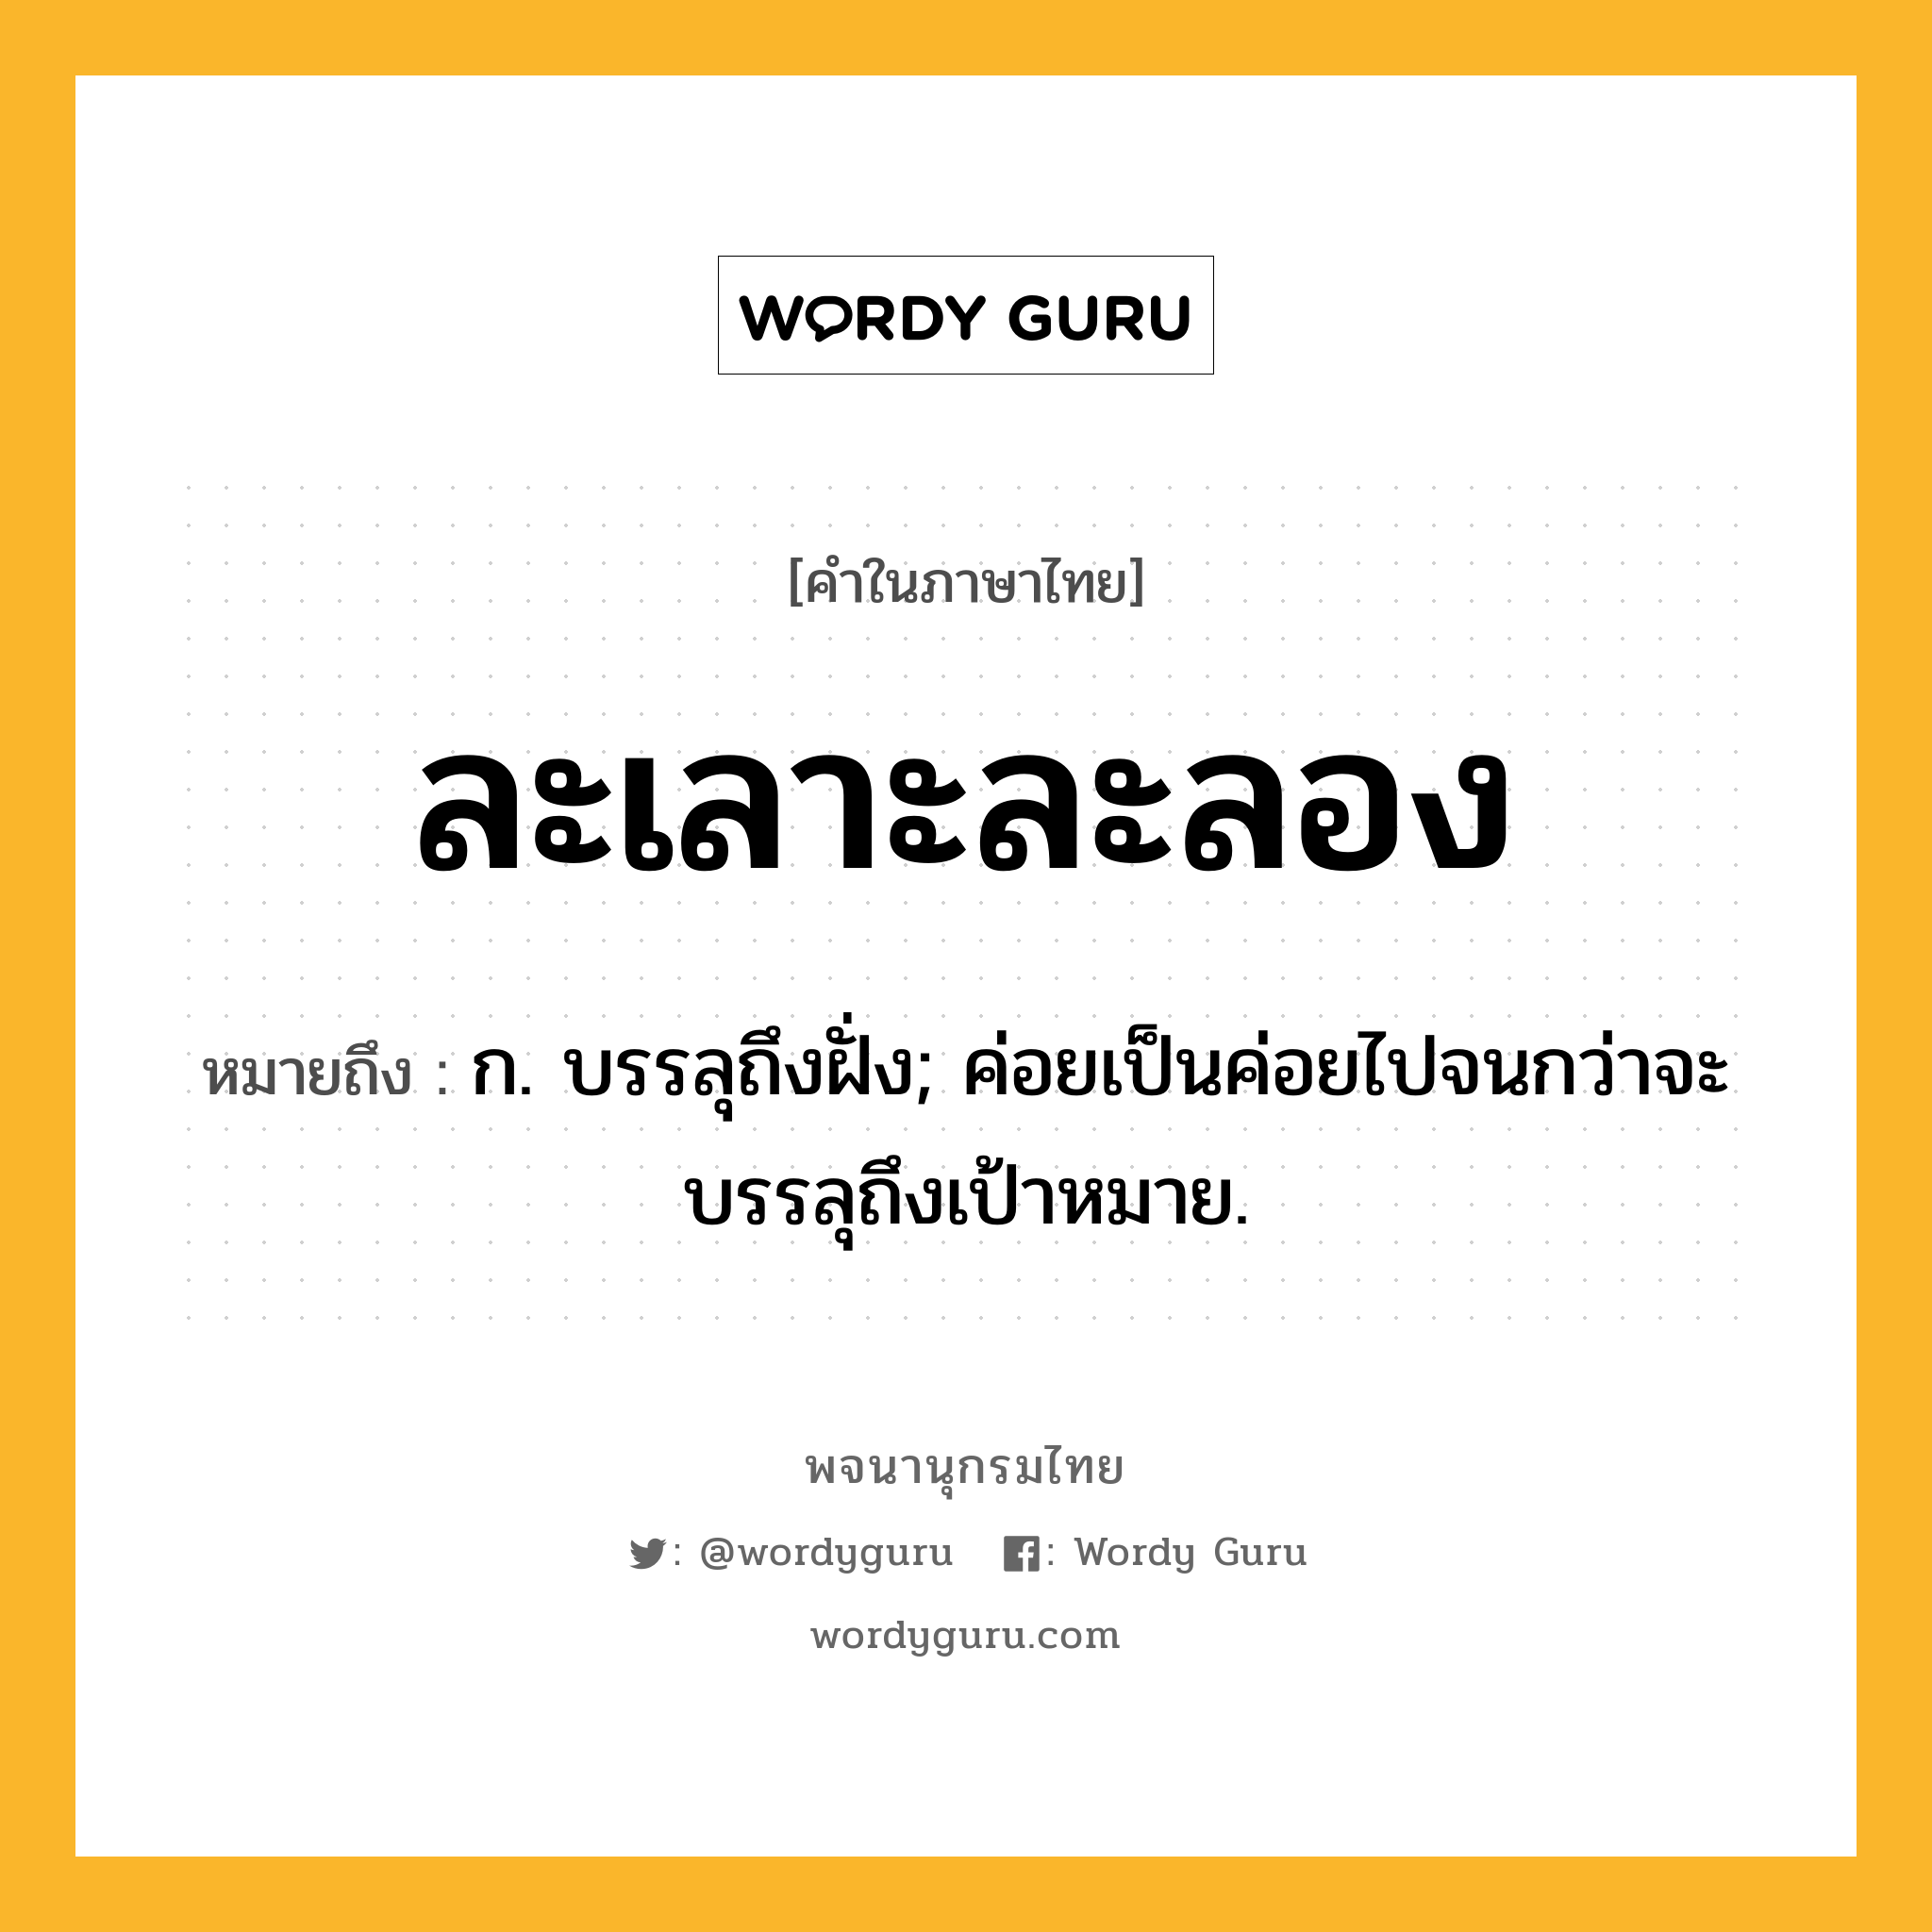 ละเลาะละลอง ความหมาย หมายถึงอะไร?, คำในภาษาไทย ละเลาะละลอง หมายถึง ก. บรรลุถึงฝั่ง; ค่อยเป็นค่อยไปจนกว่าจะบรรลุถึงเป้าหมาย.